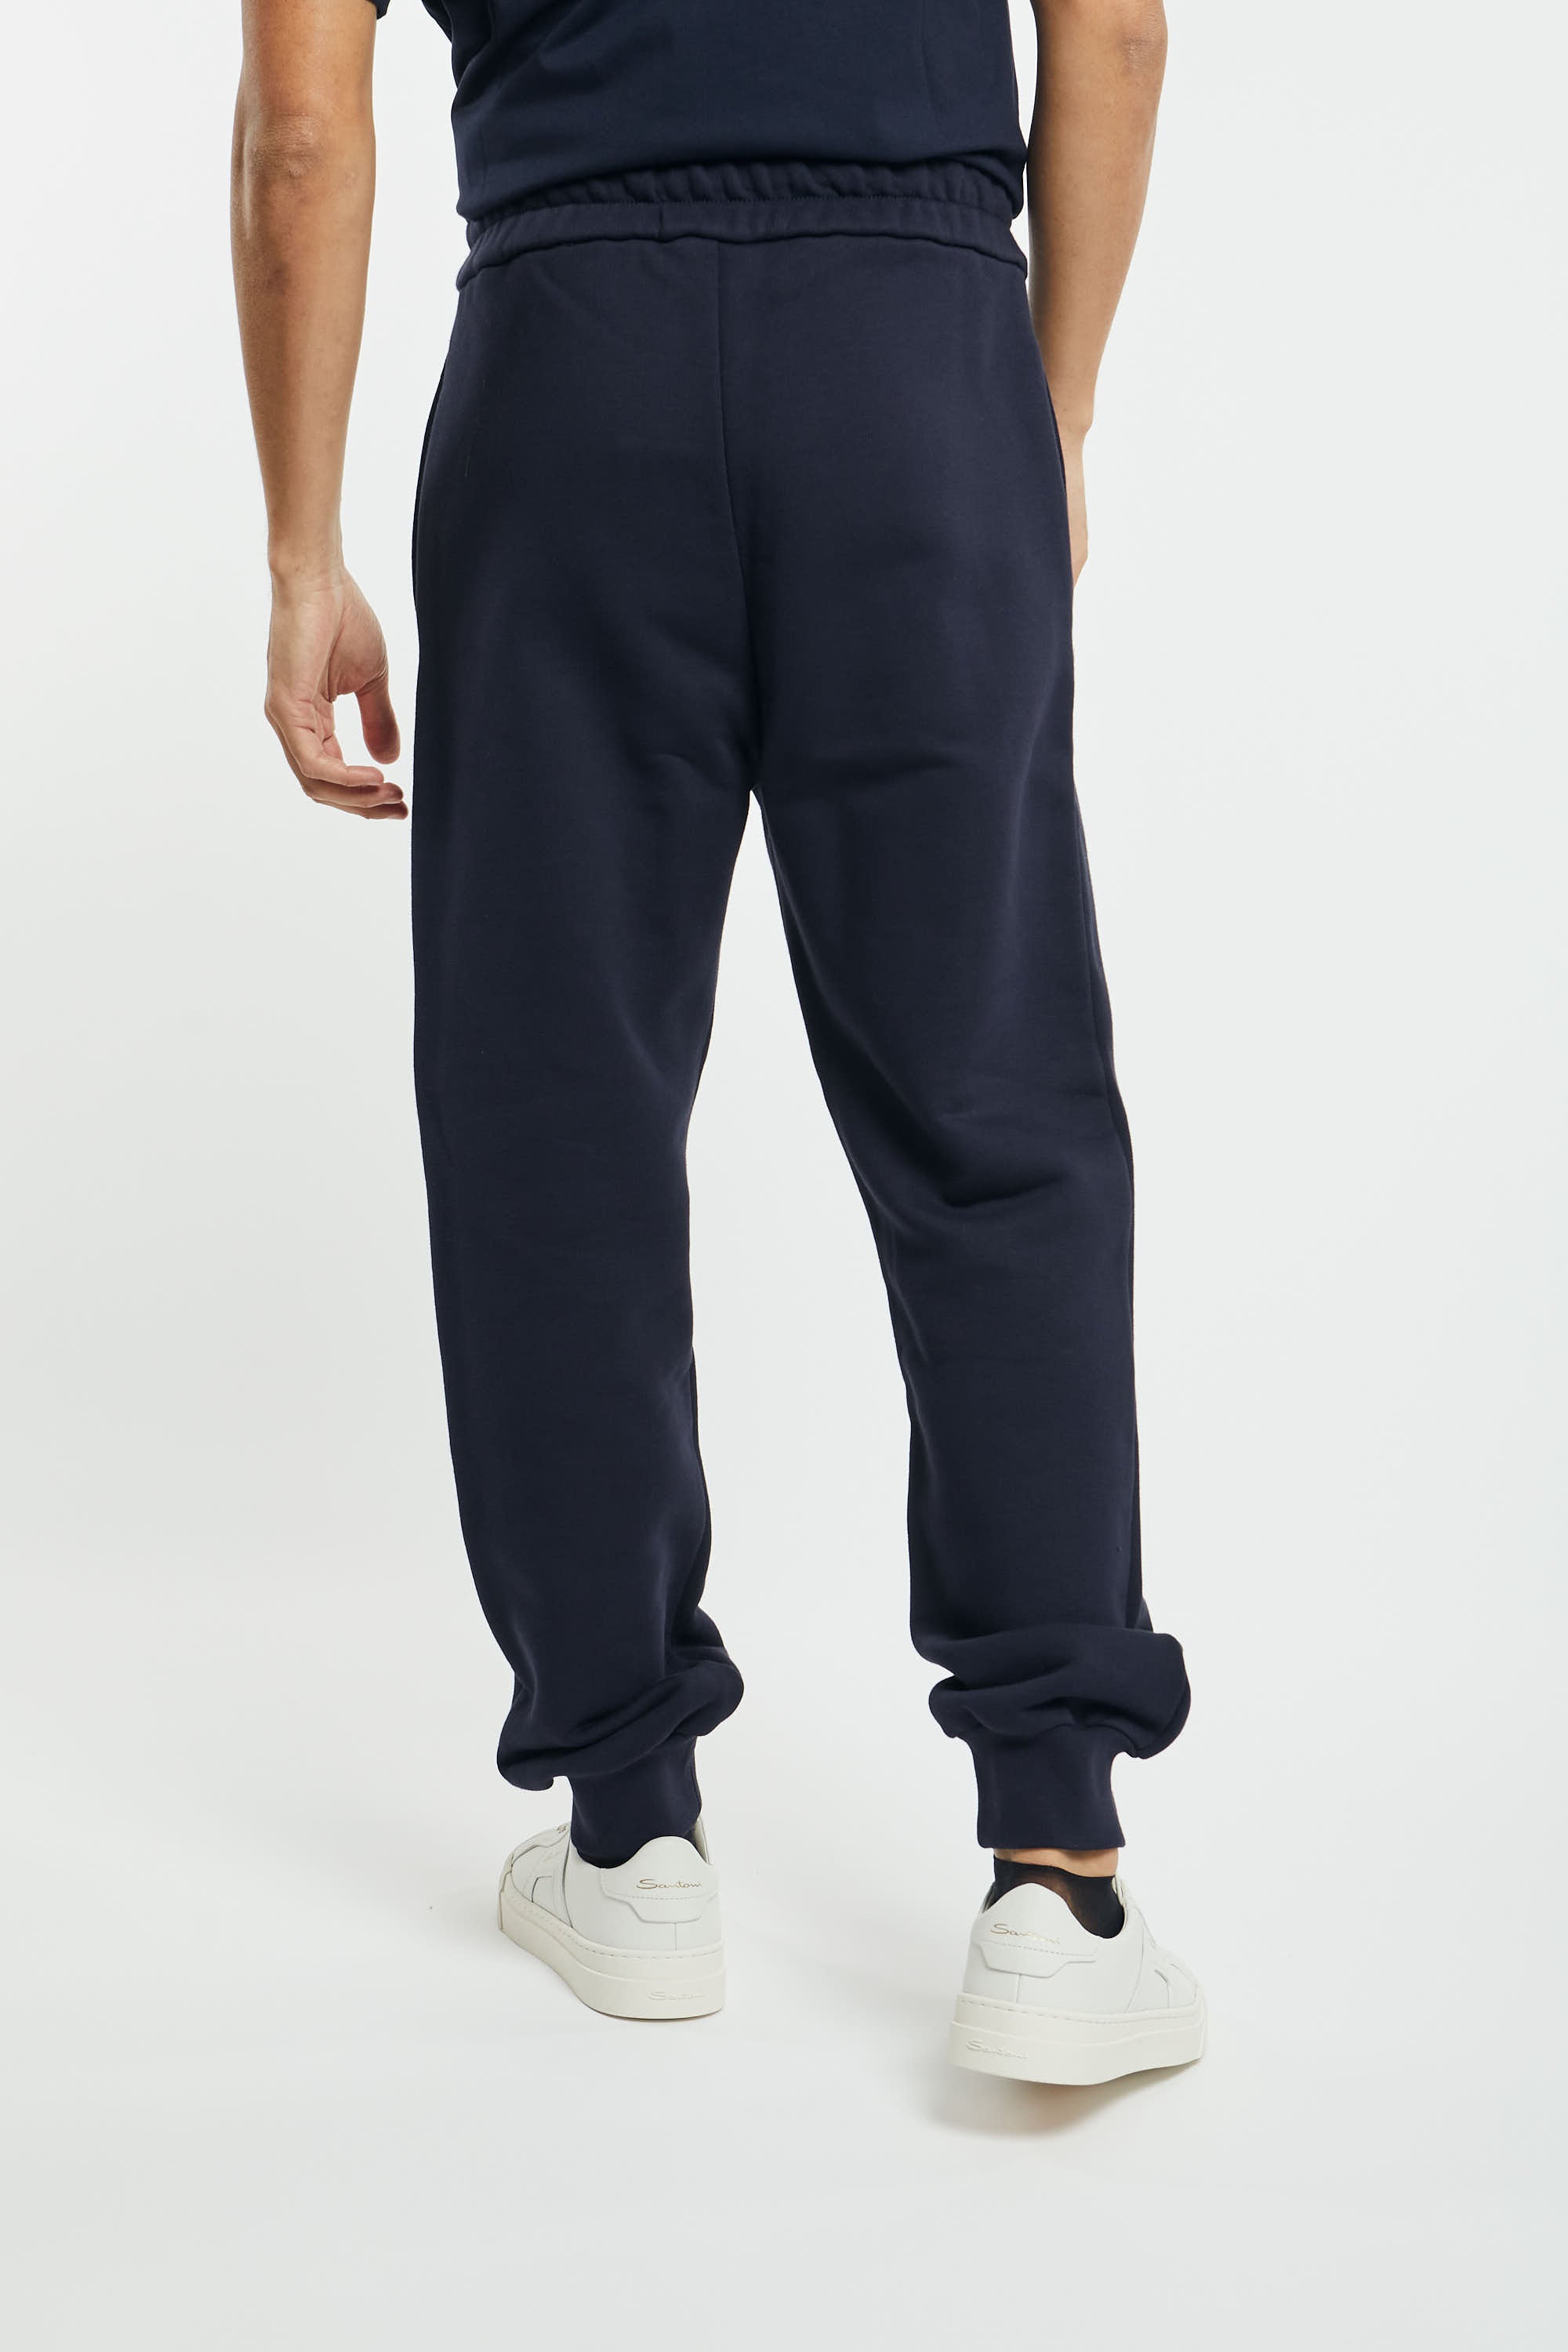 N°21 Blue Cotton Pants - 5